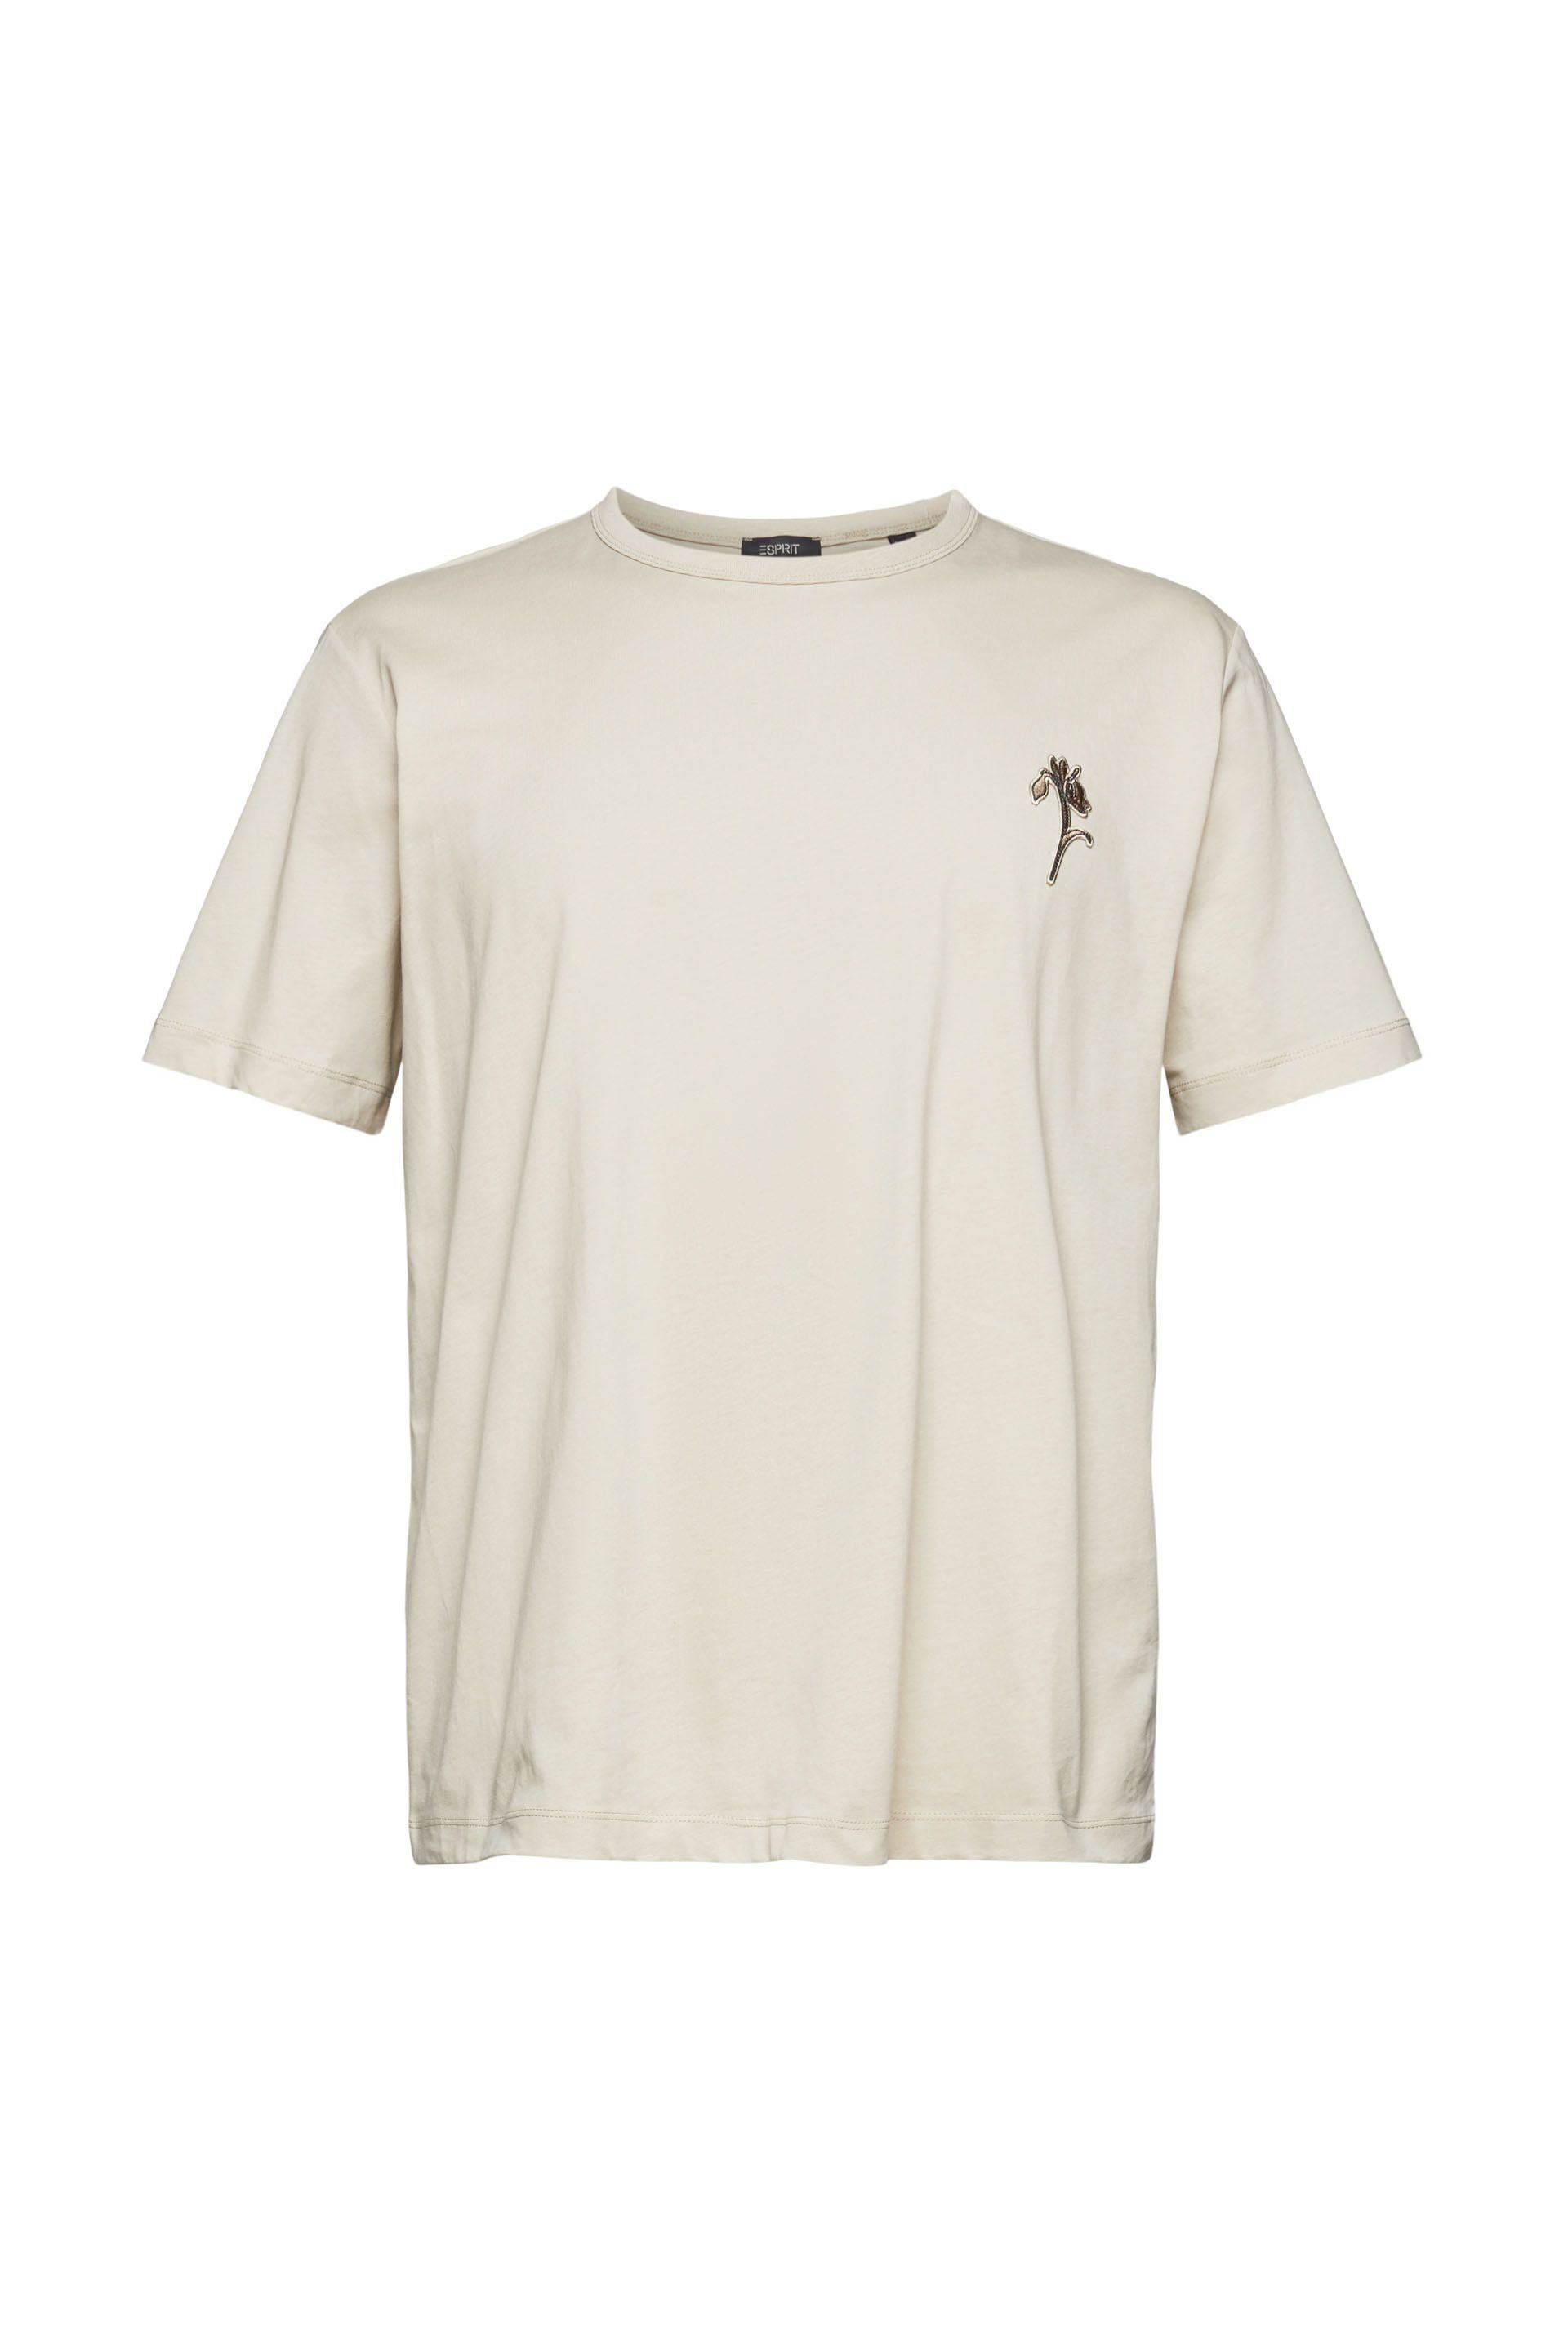 Esprit T-Shirt light beige